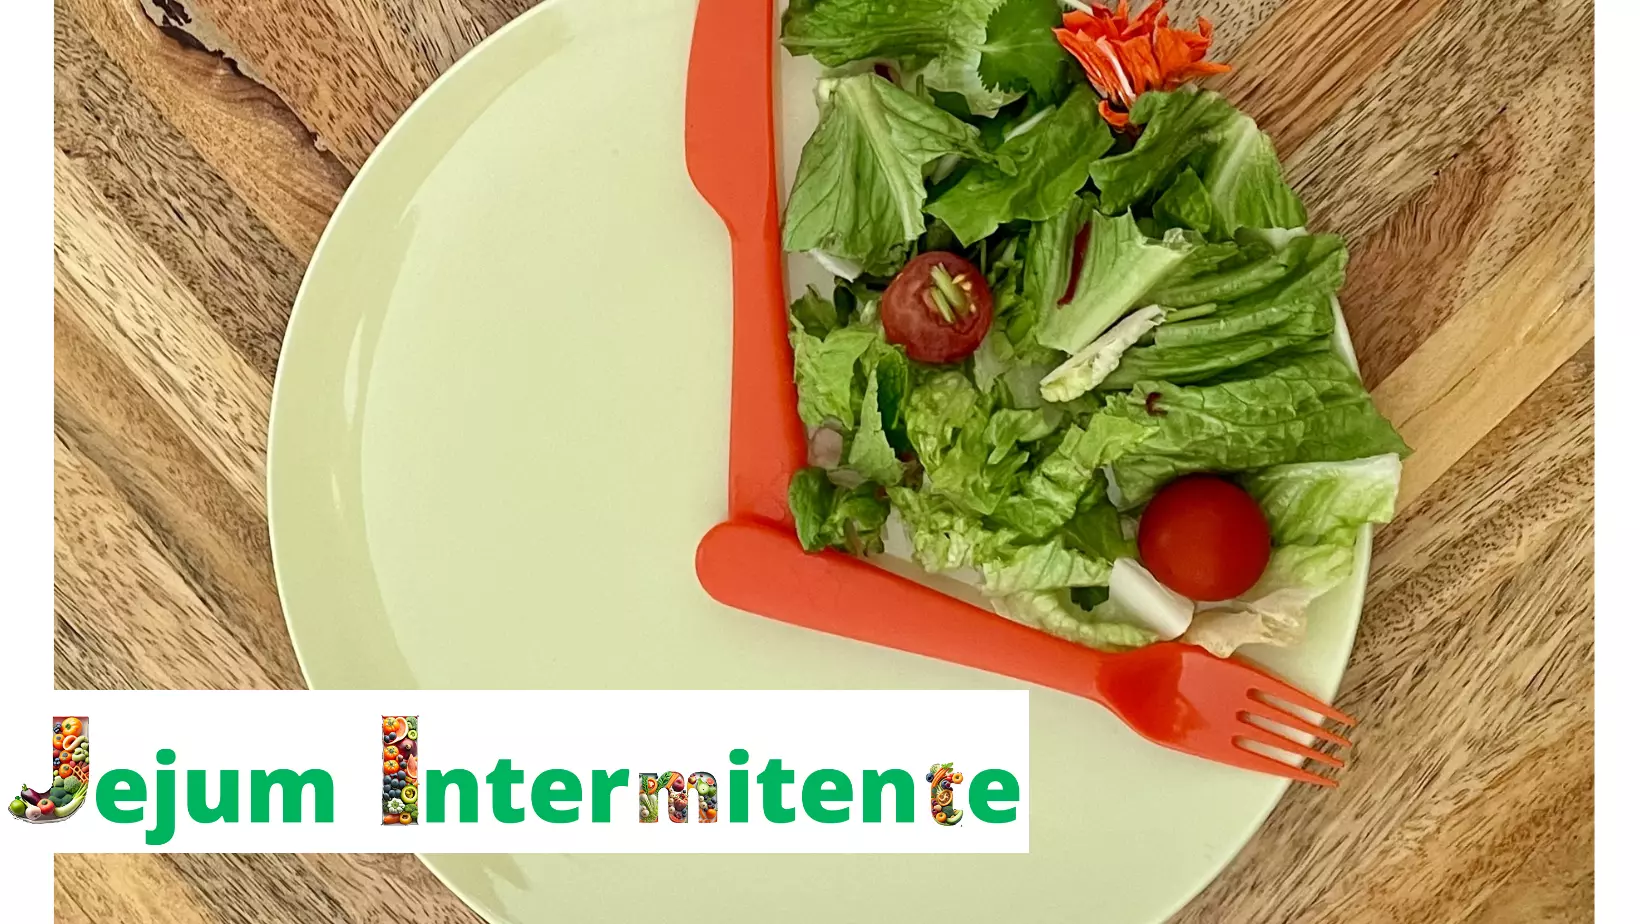 O jejum intermitente é mais uma opção de emagrecimento que elabora um plano alimentar que intercala períodos de jejum com períodos de alimentação em um horário regular.